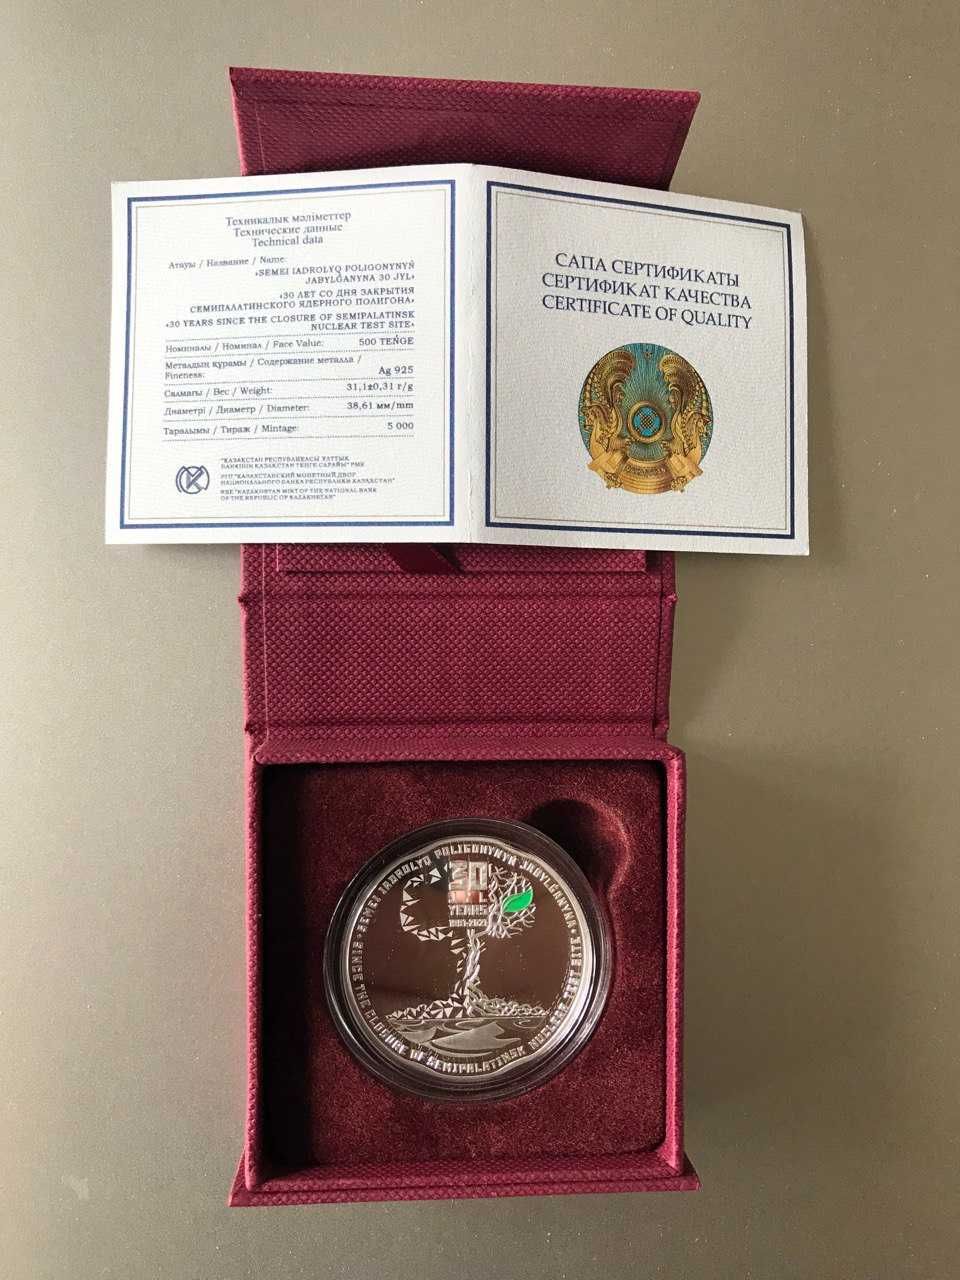 Коллекционная монета "30 лет закрытия Семипалатинского полигона"